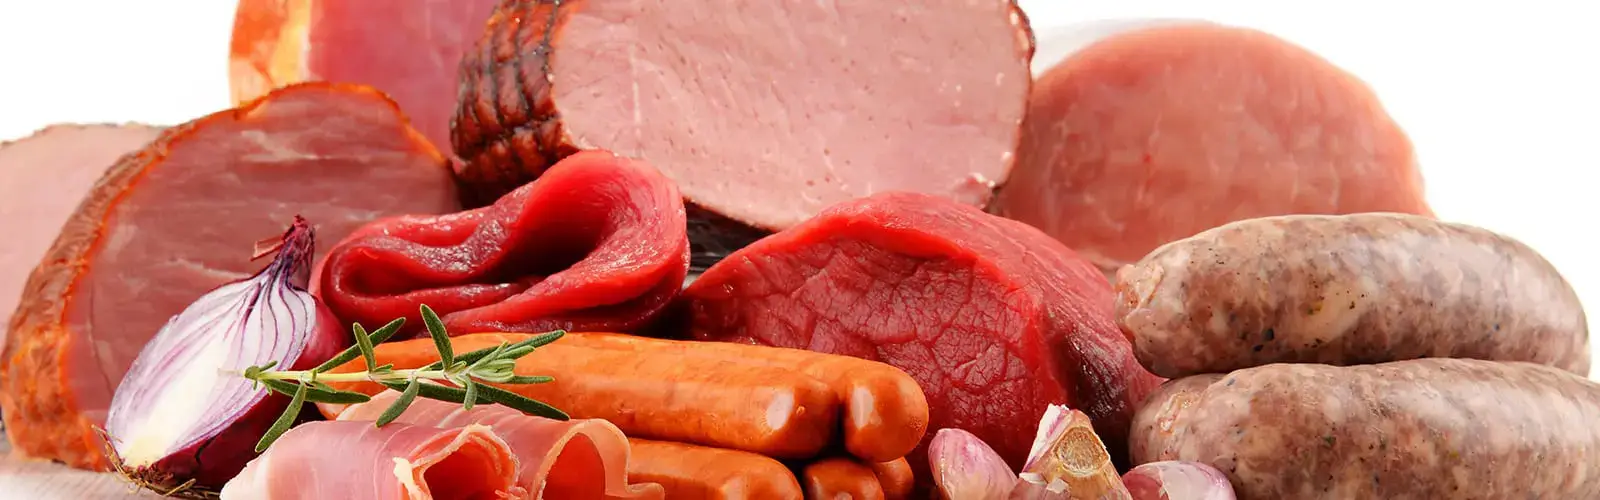 meat bundle processing highland illinois